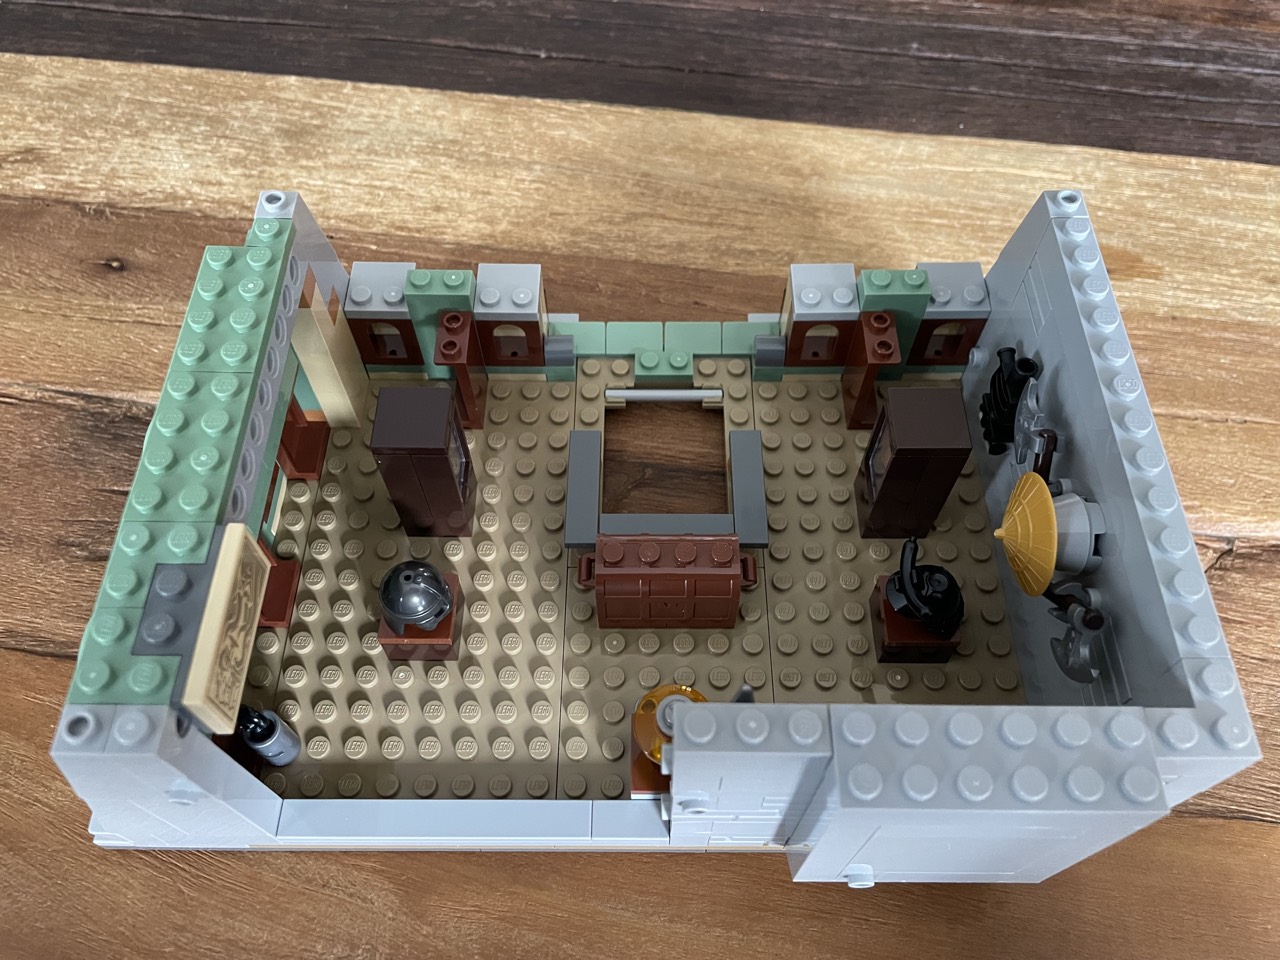 LEGO 76218 Sanctum Sanctorum